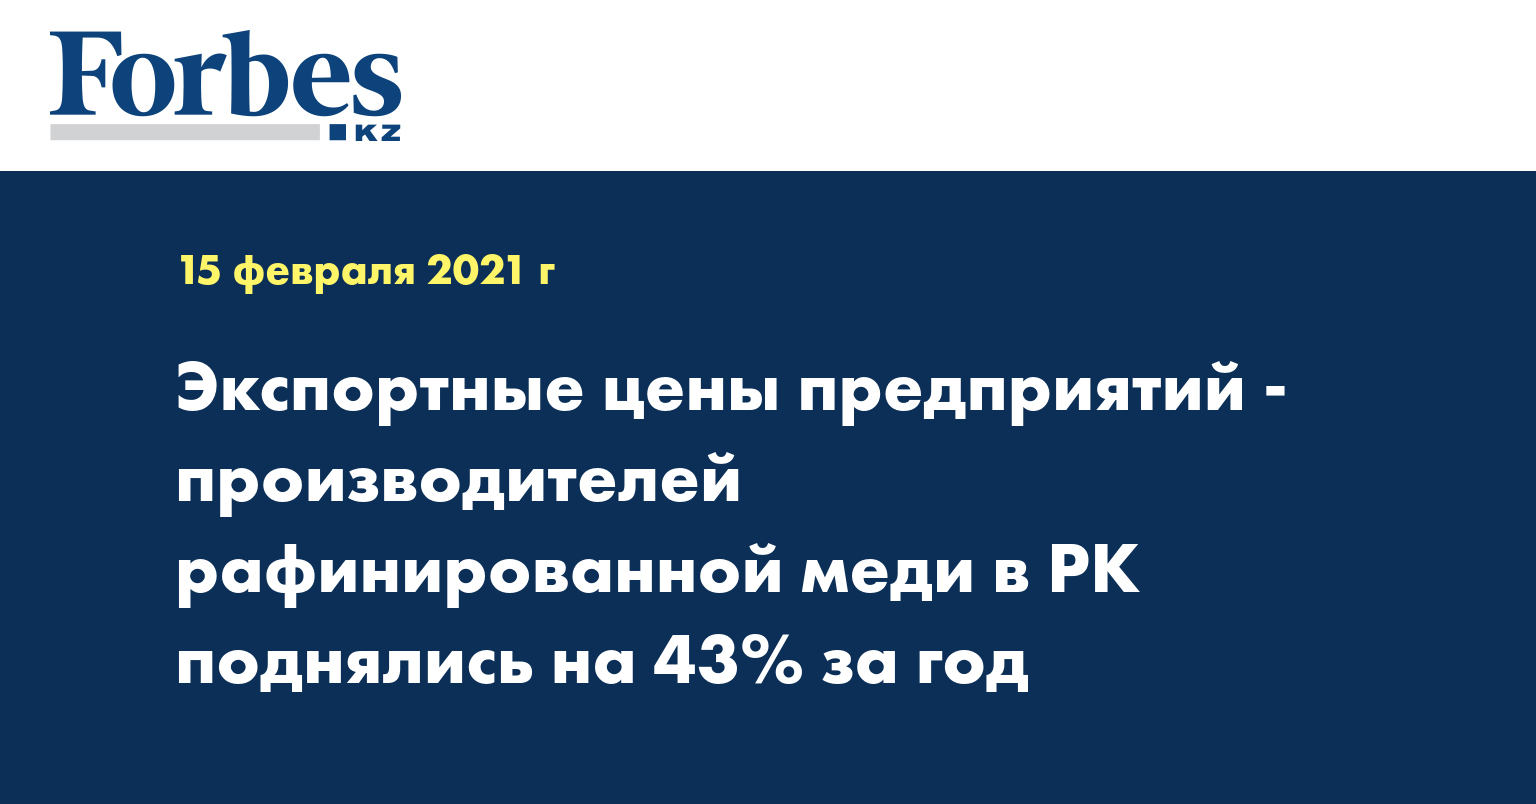 Экспортные цены предприятий-производителей рафинированной меди в РК поднялись на 43% за год